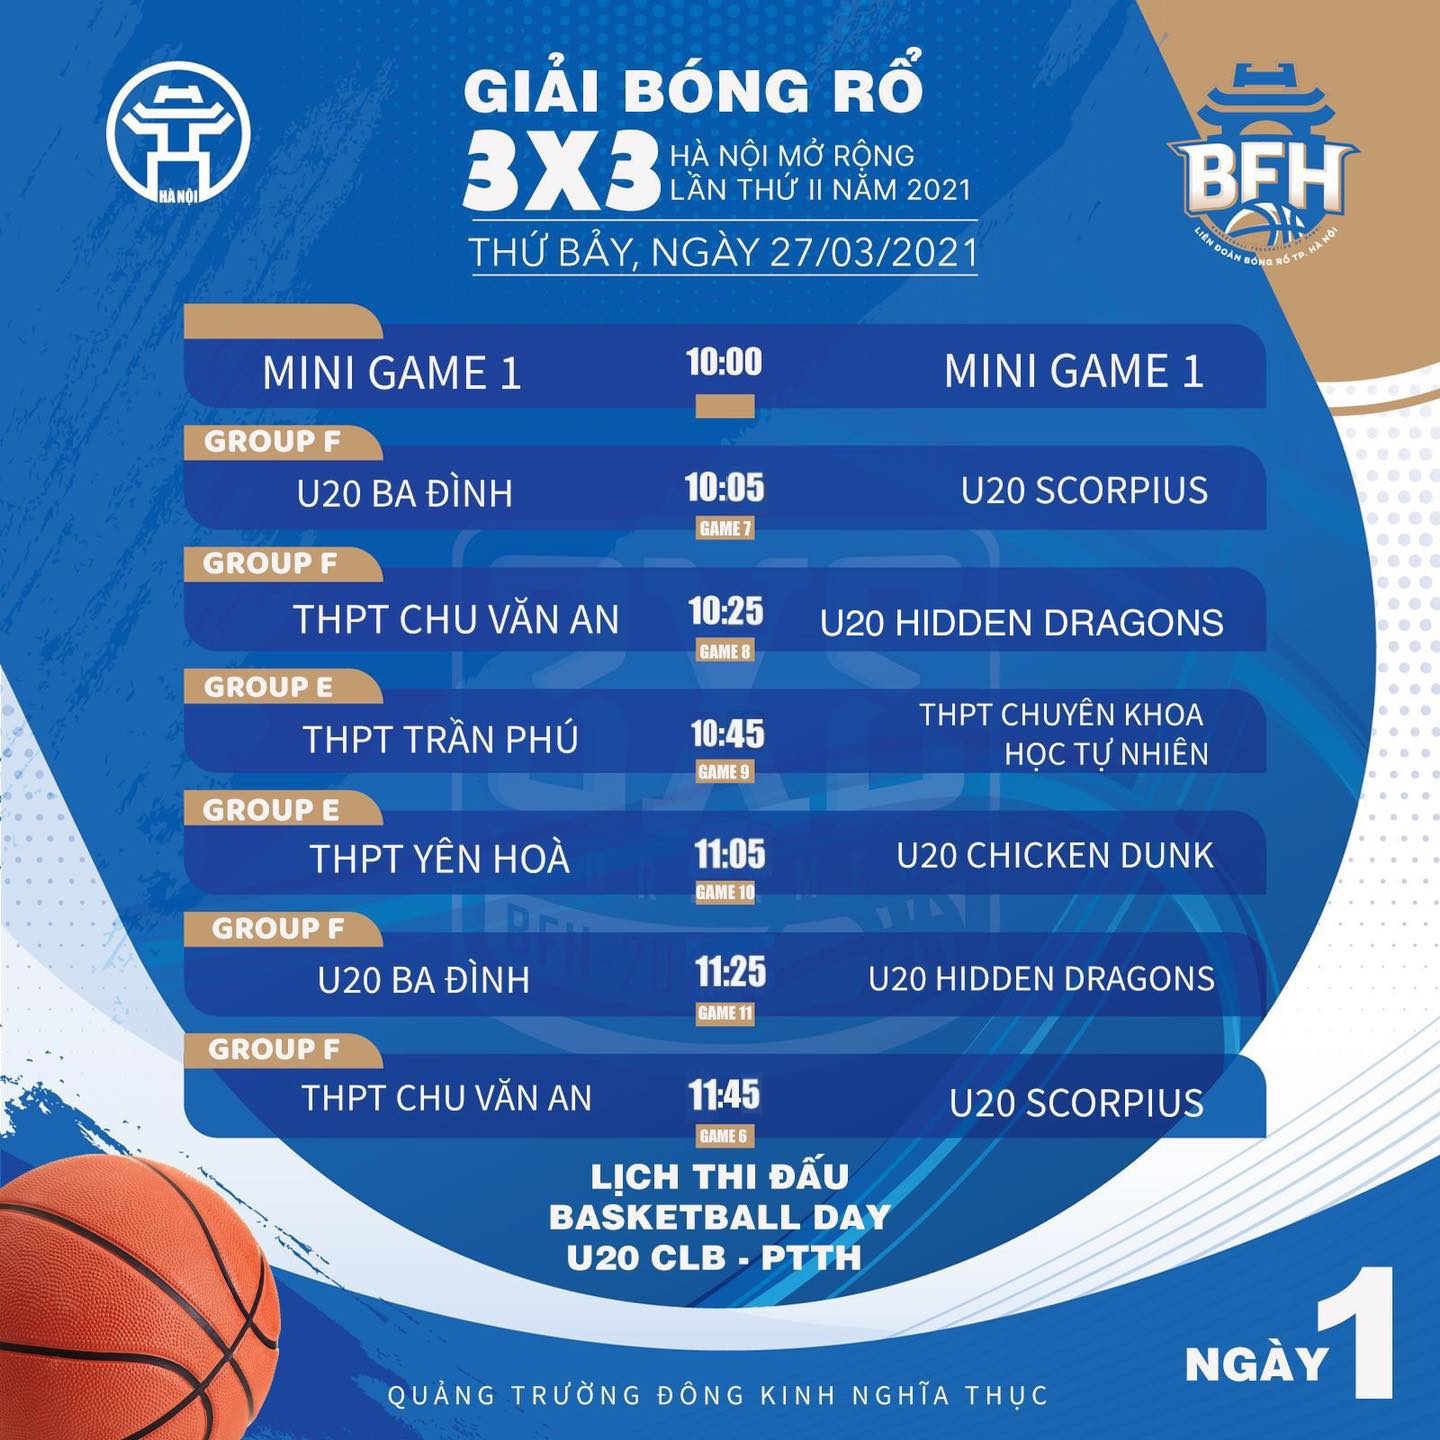 Lịch thi đấu giải bóng rổ 3x3 Hà Nội mở rộng lần 2 năm 2021 - Ảnh 3